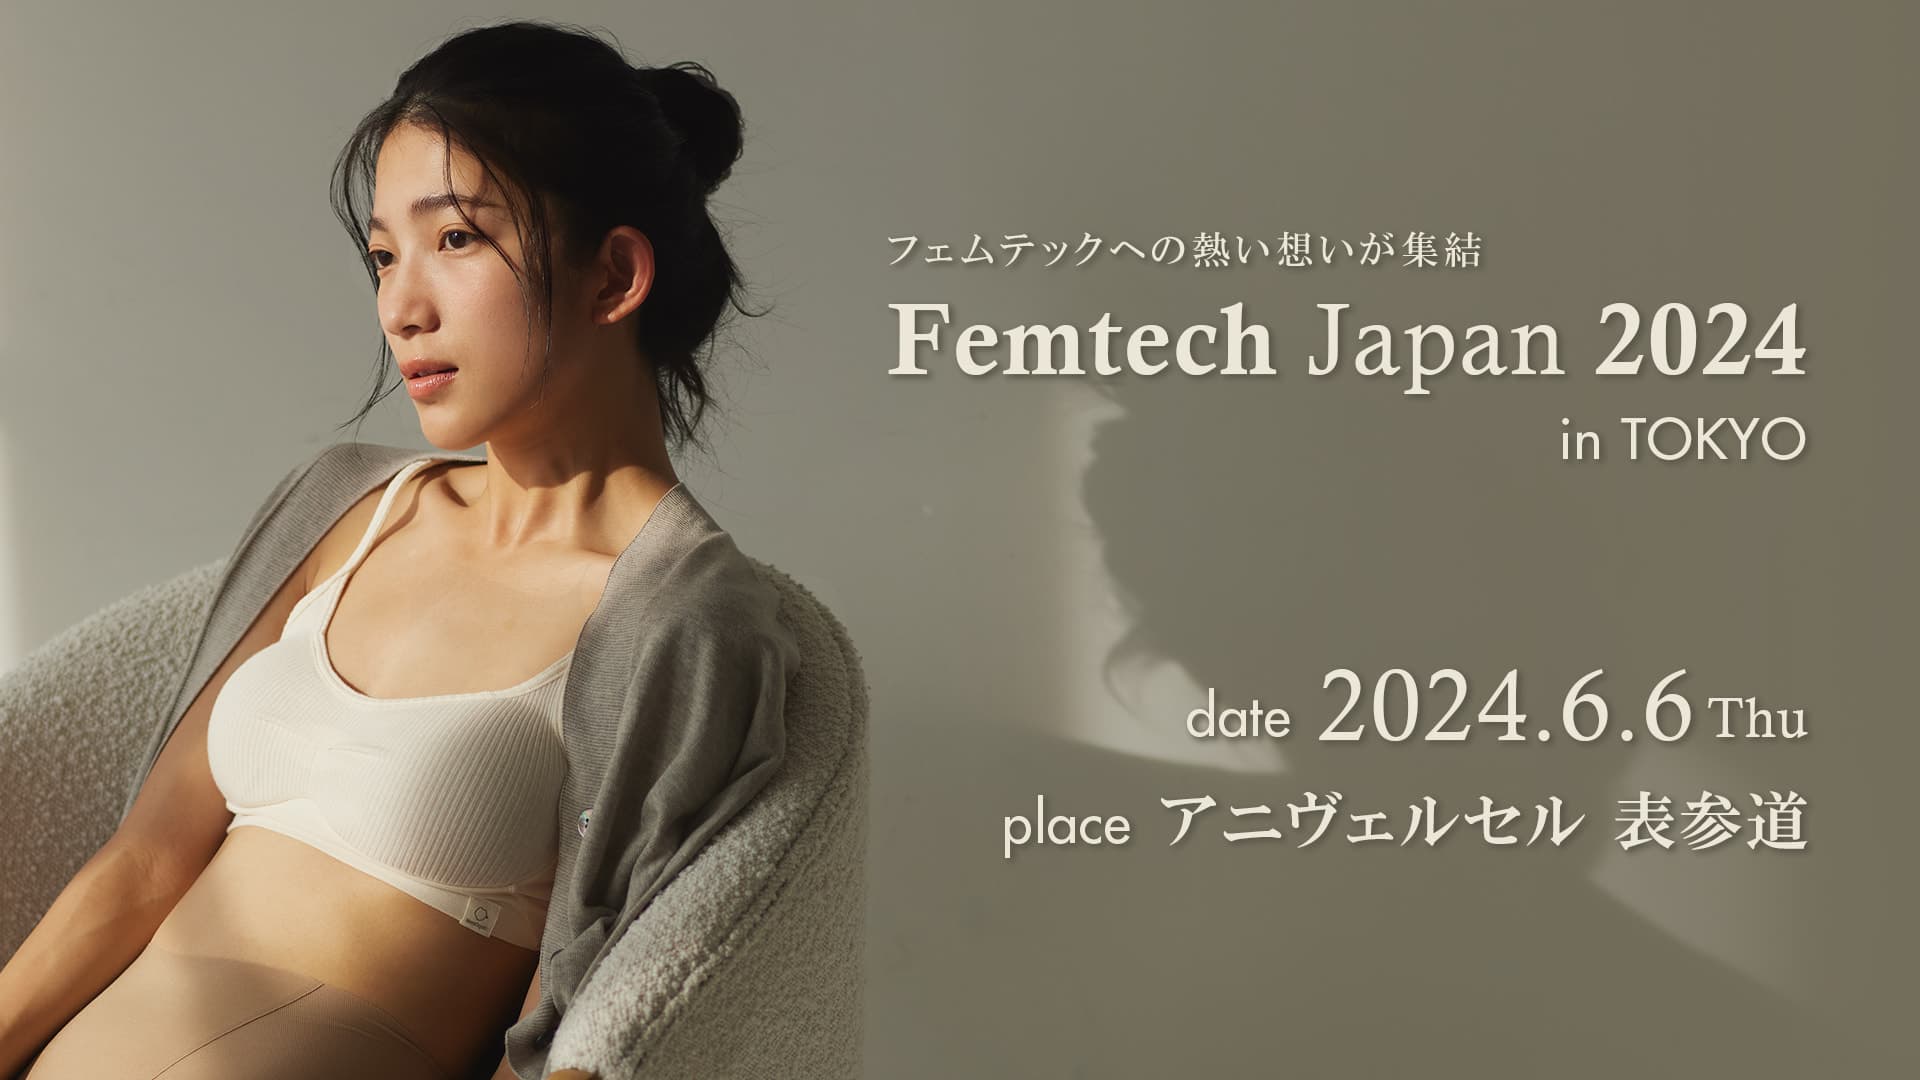 フェムケアブランド「hinna」は、「Femtech Japan / Femcare Japan 2024 in TOKYO」に出展いたします｜サムネイル